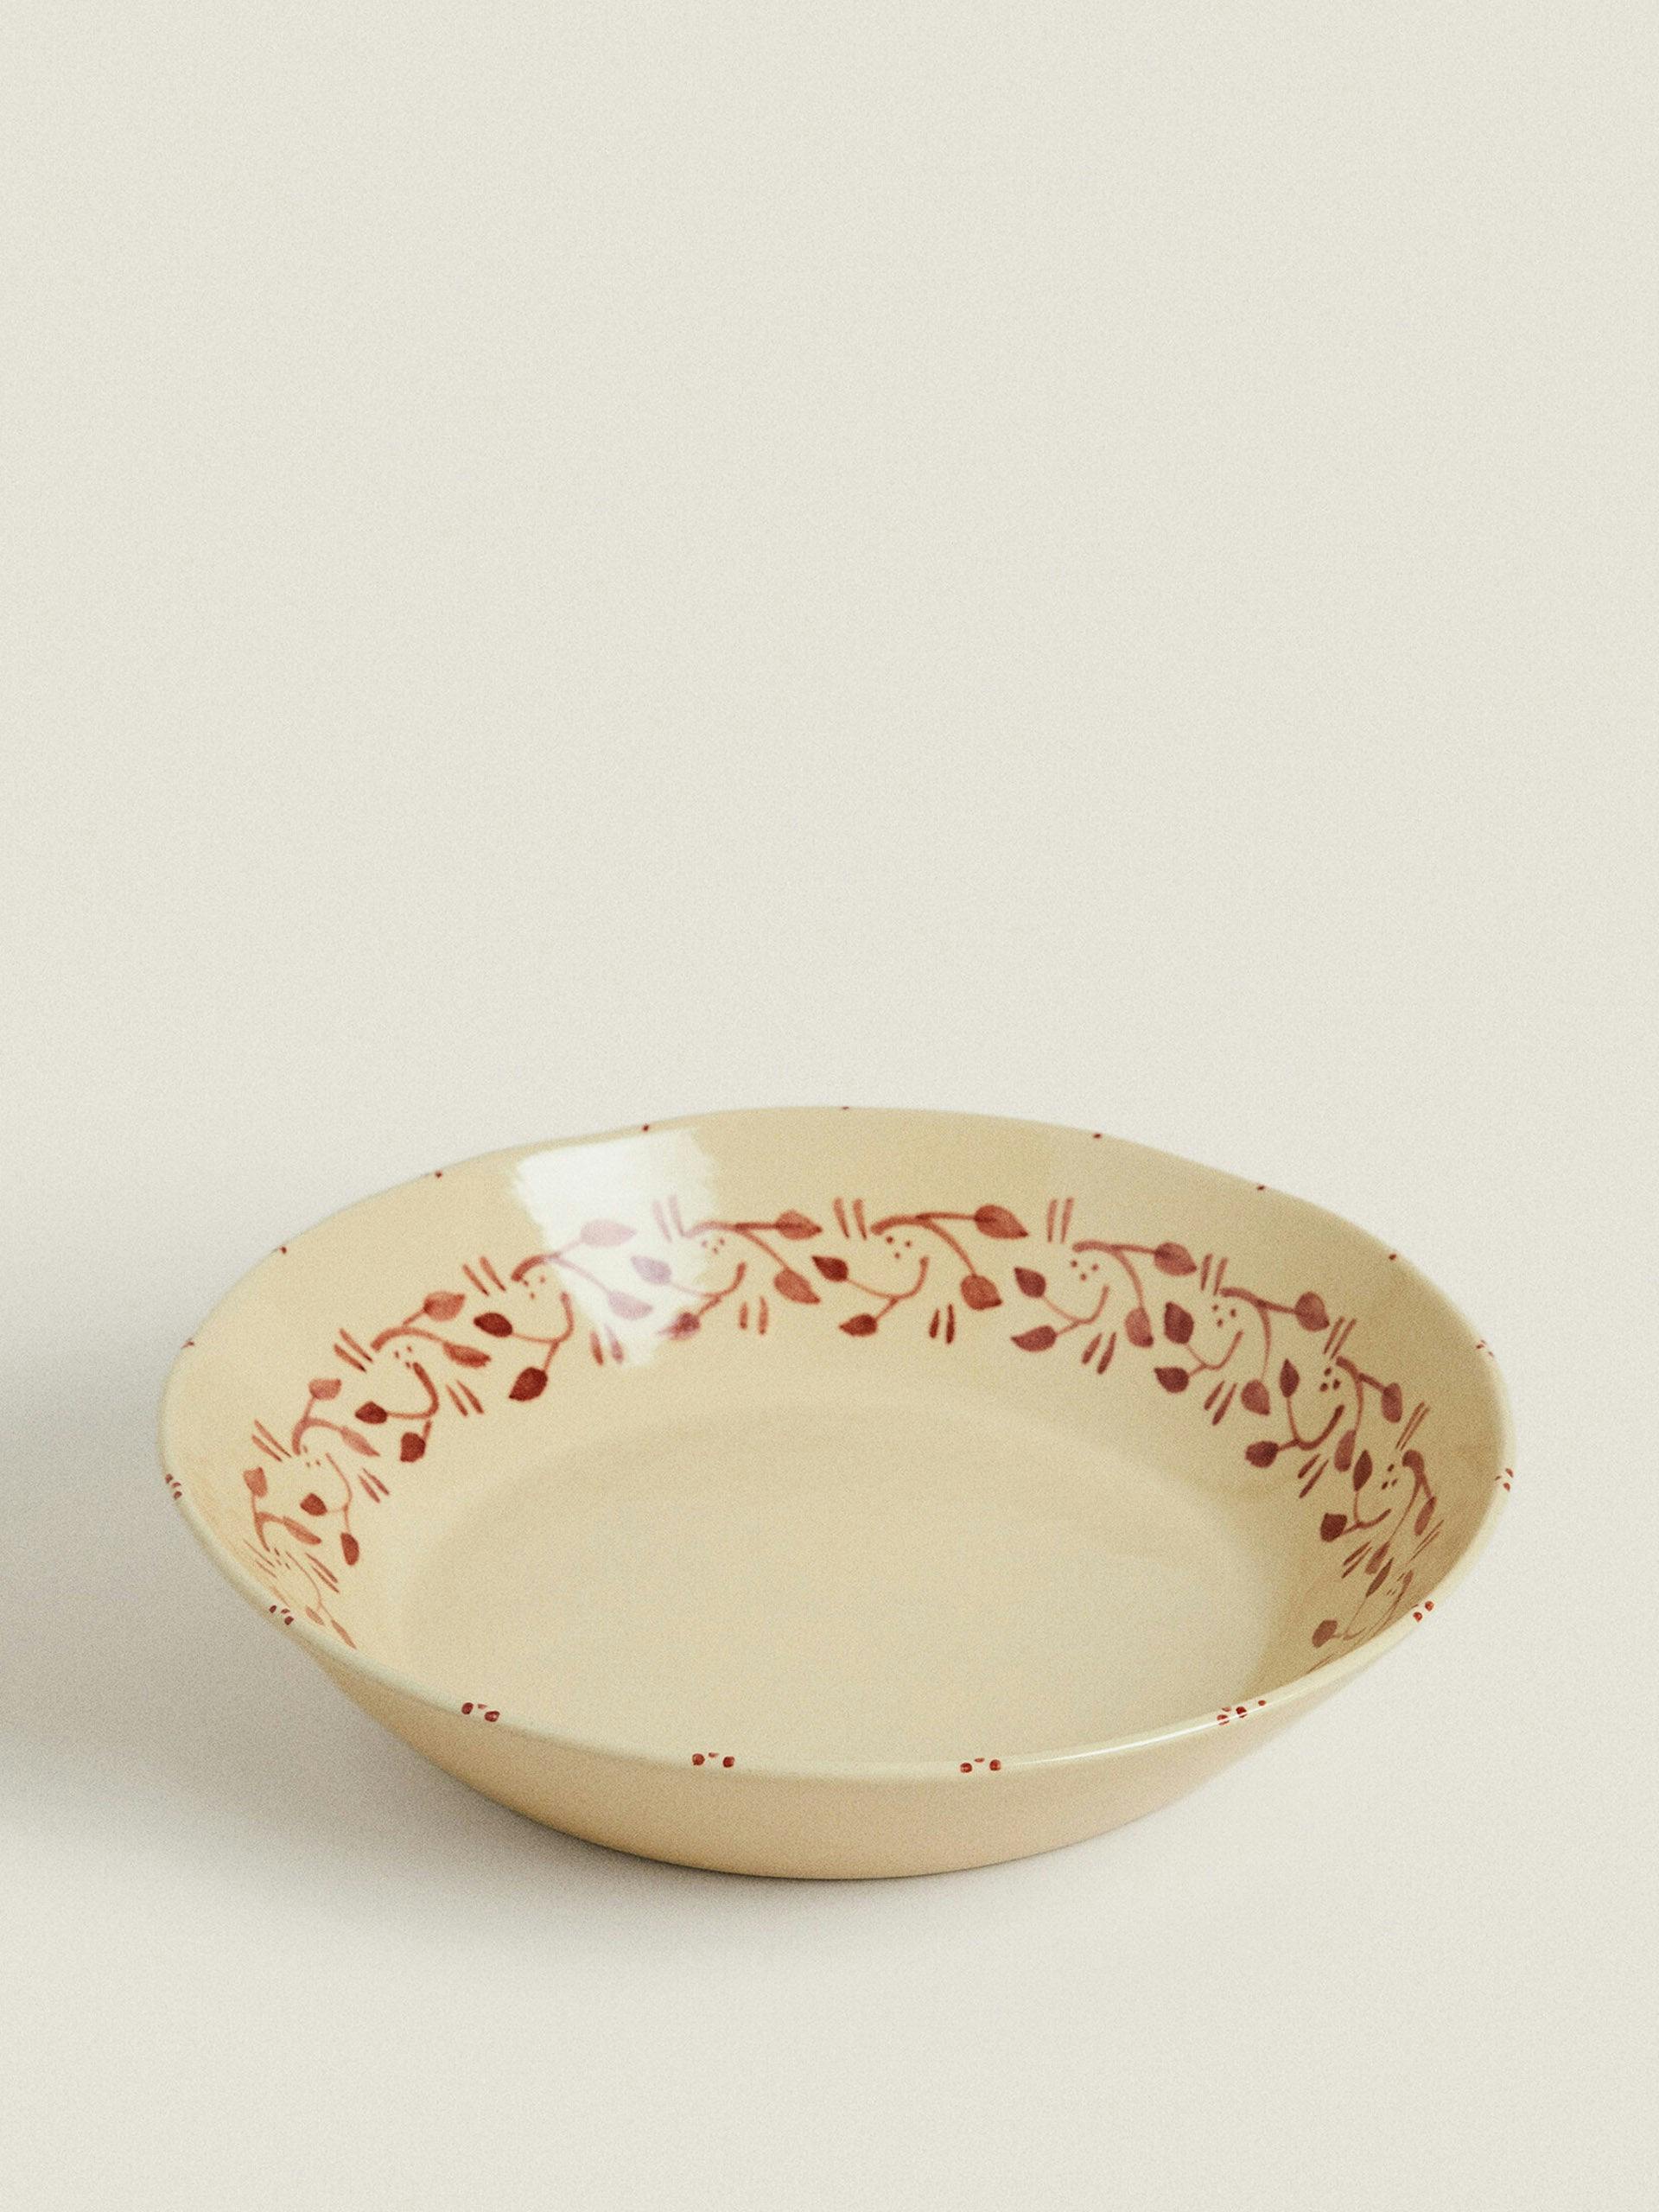 Painted ceramic Christmas bowl